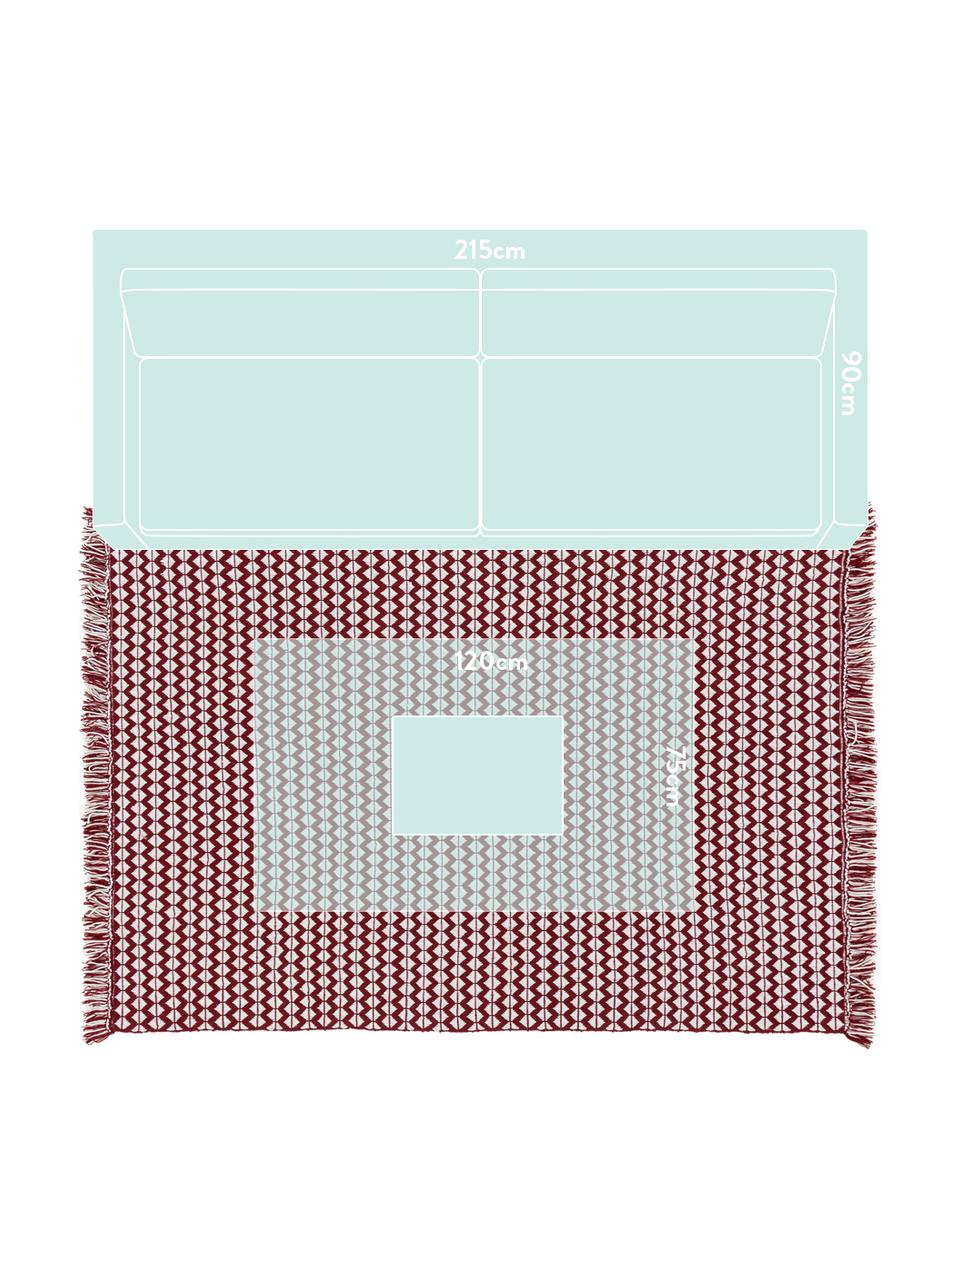 Vnitřní a venkovní koberec s ethno vzorem Morty, Červená, světle bílá